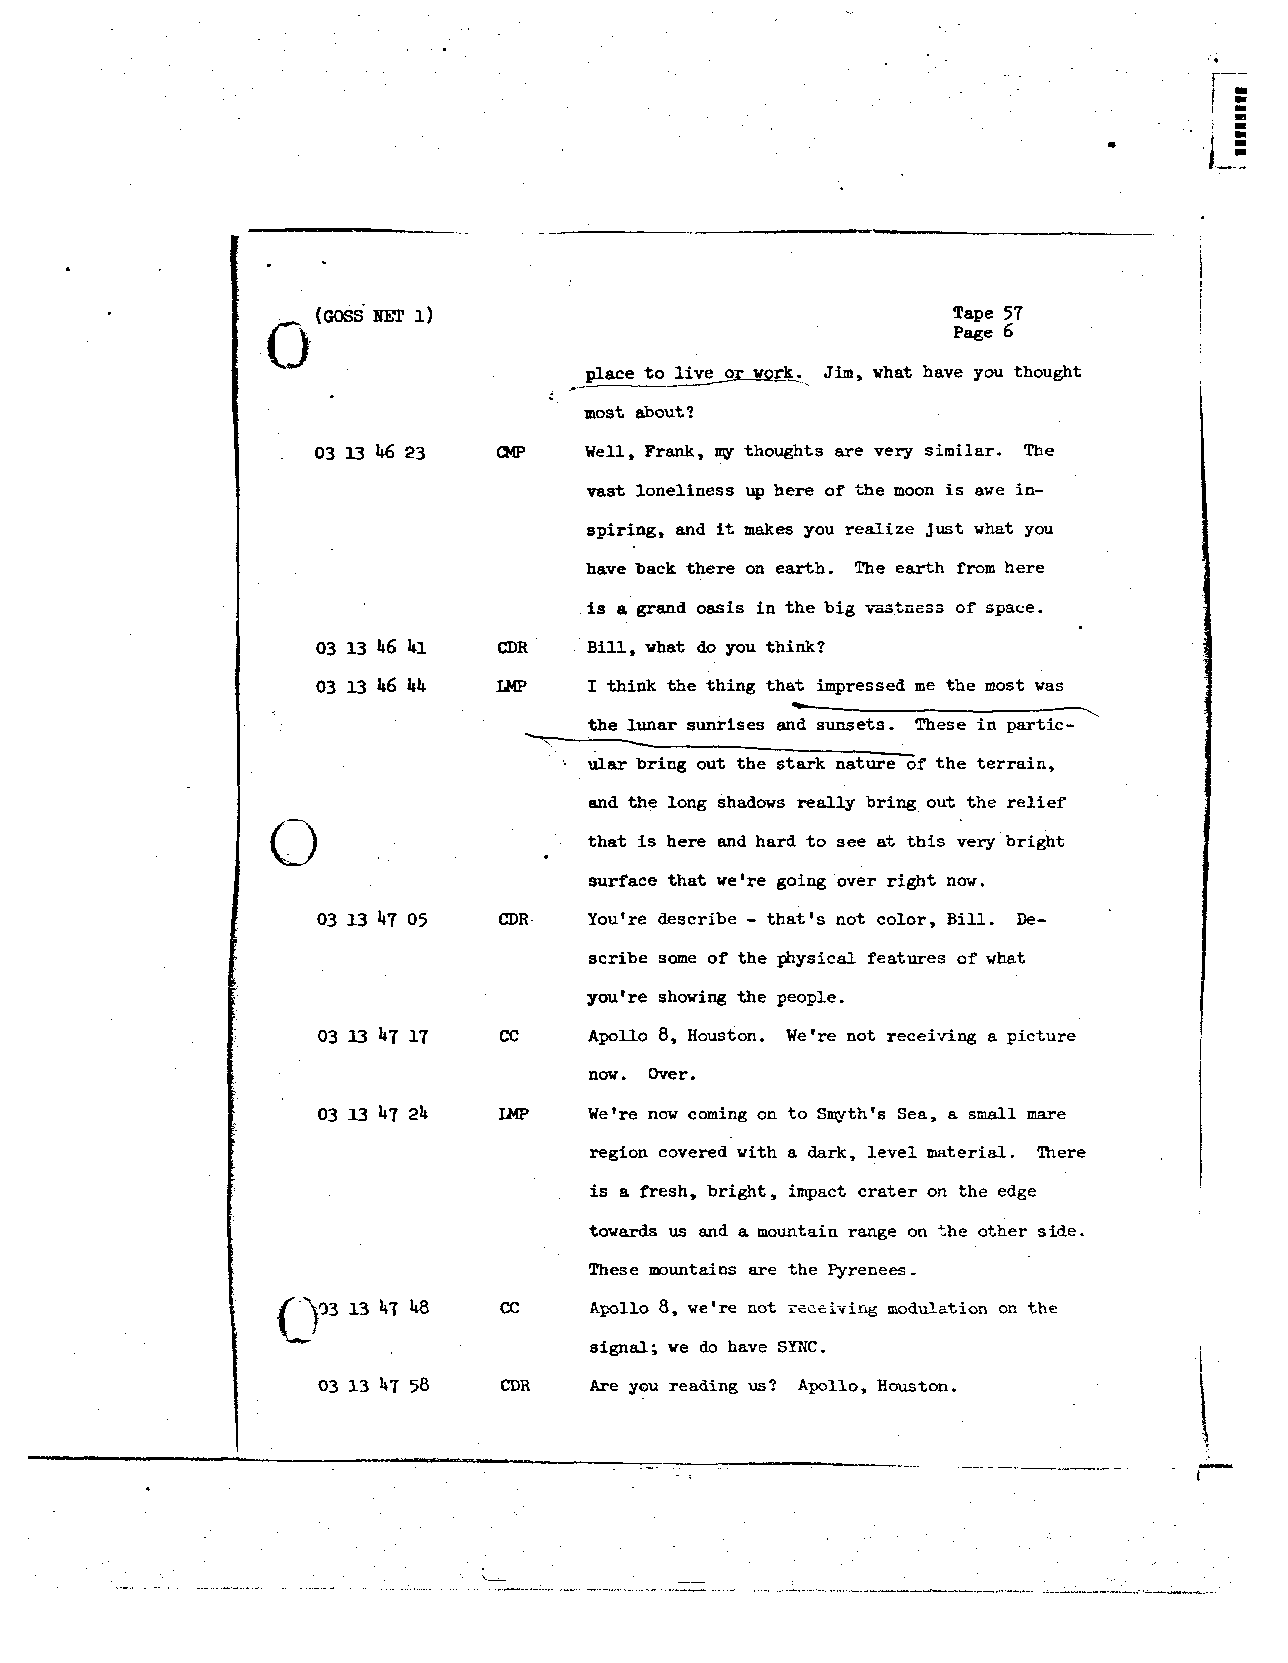 Page 455 of Apollo 8’s original transcript